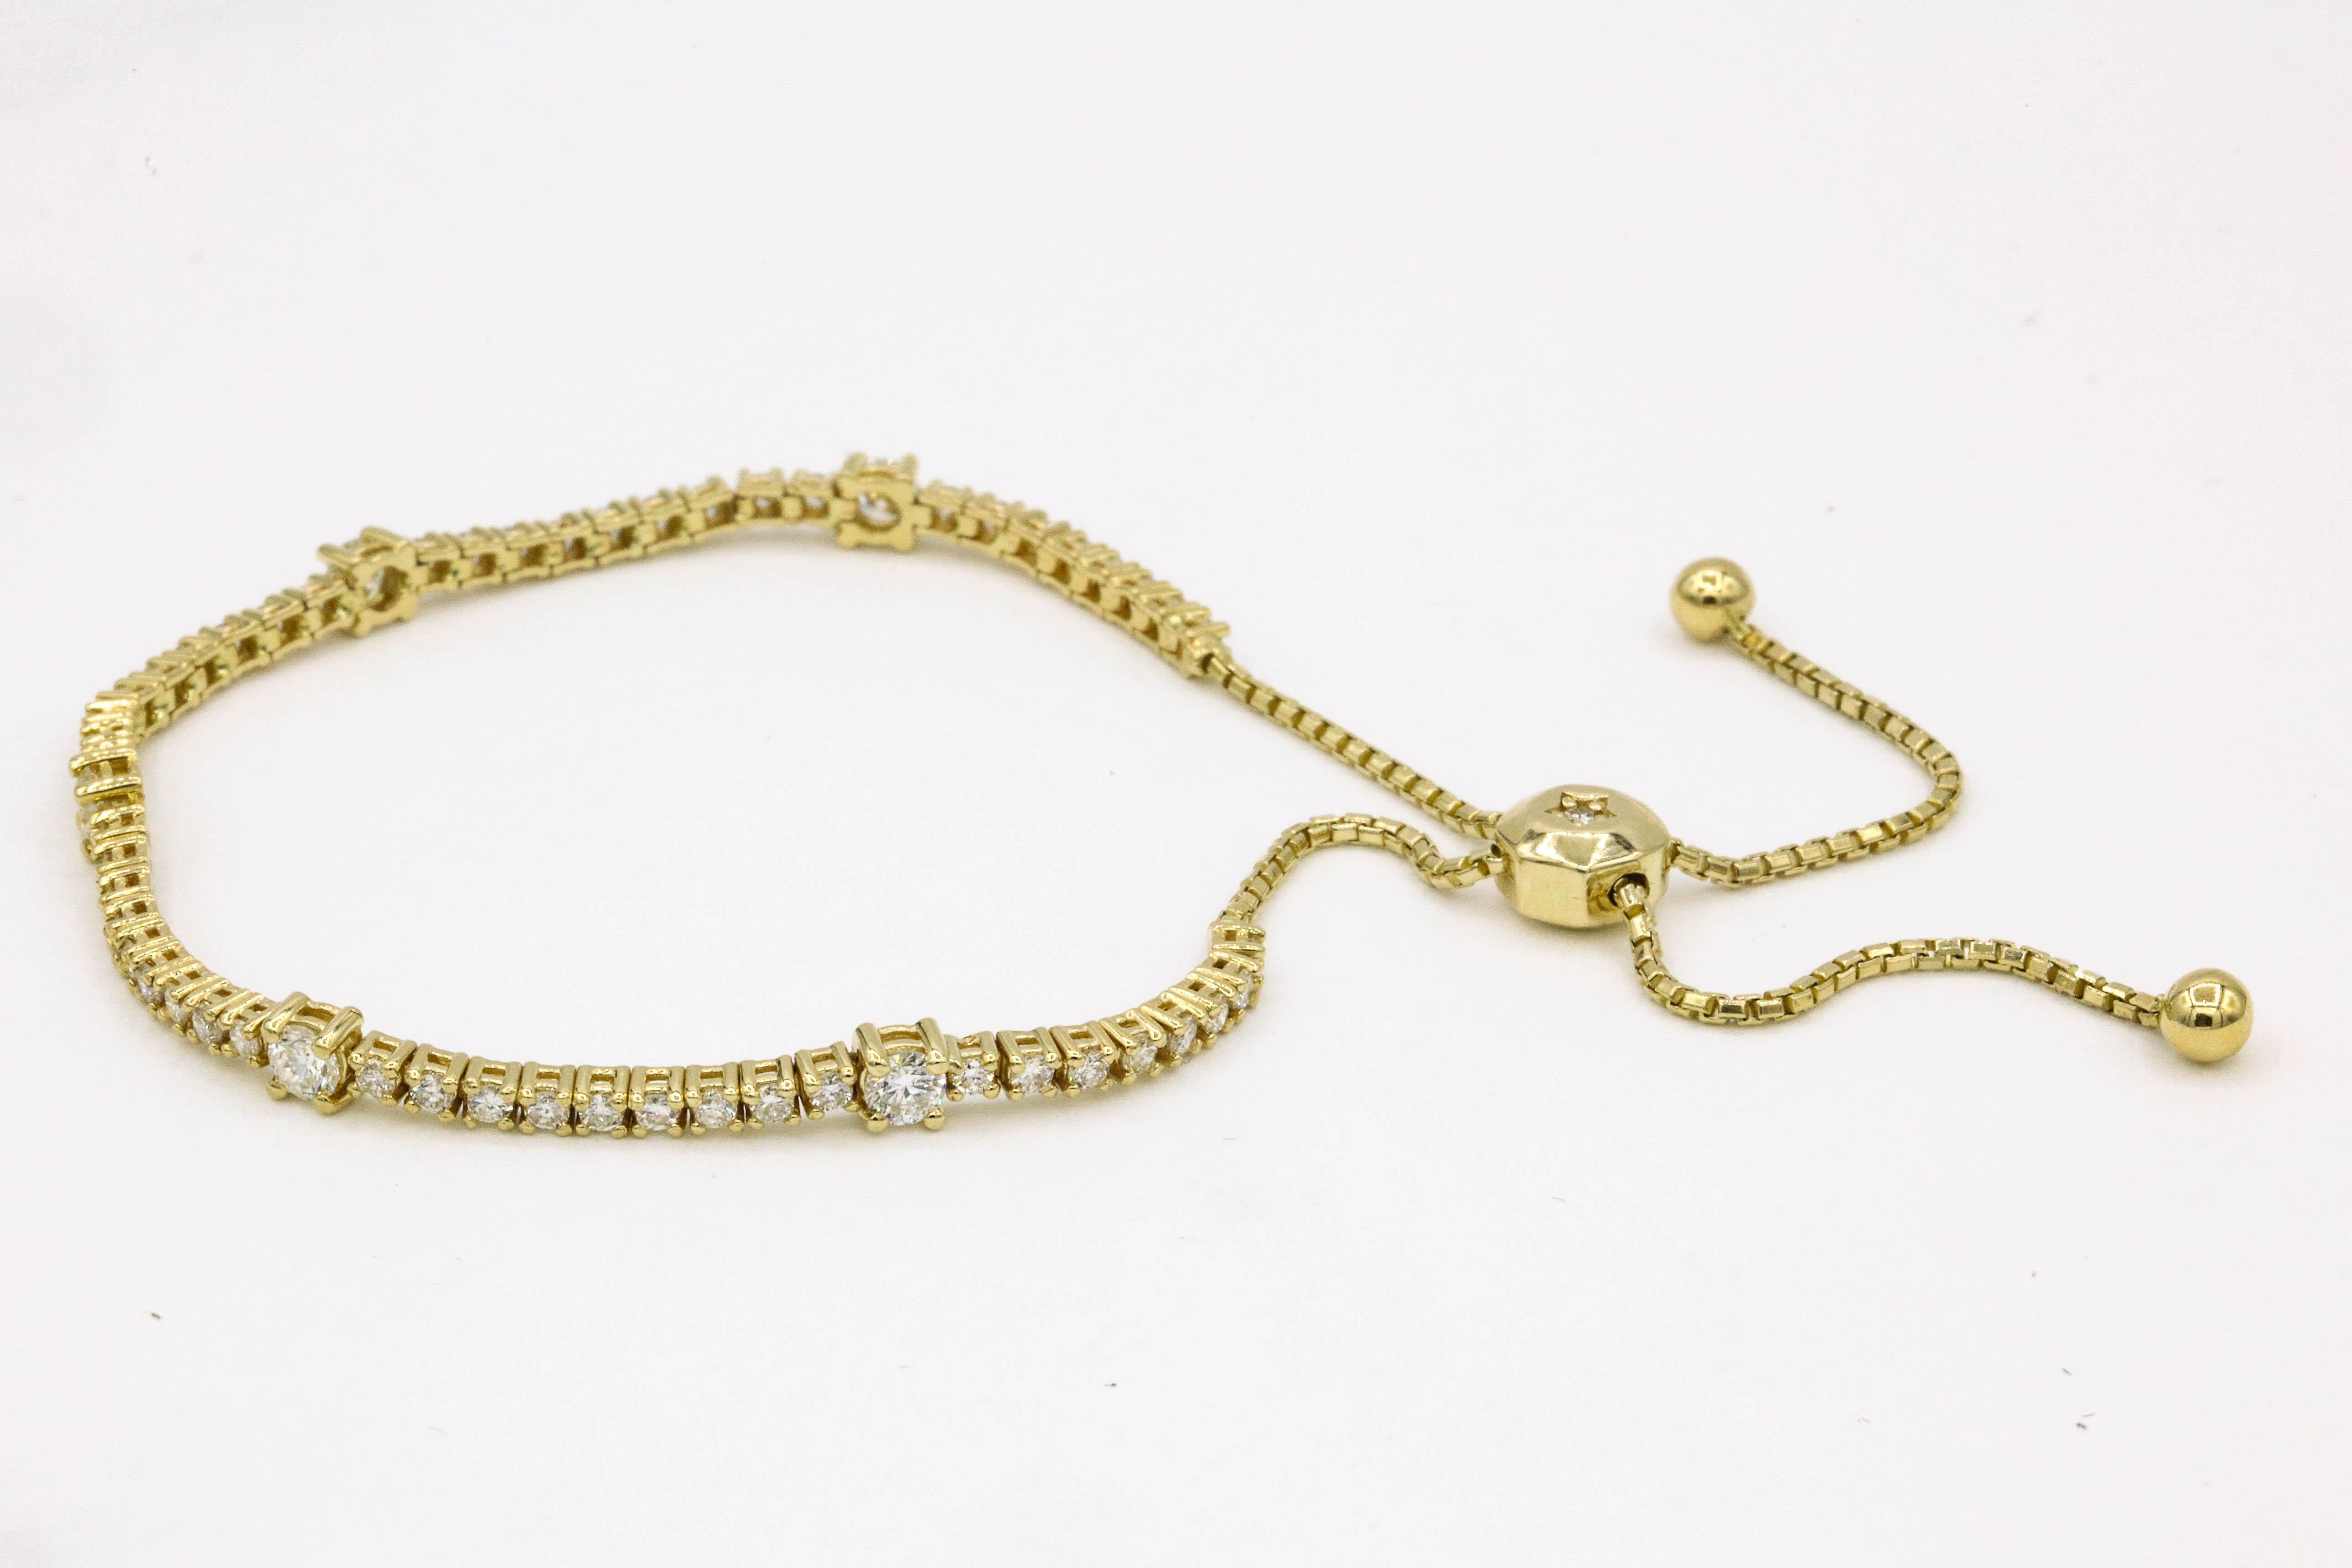 Bracelet de tennis extensible en diamants comprenant 59 brillants ronds pesant environ 2 carats, en or jaune 14k.
Disponible en or blanc.  